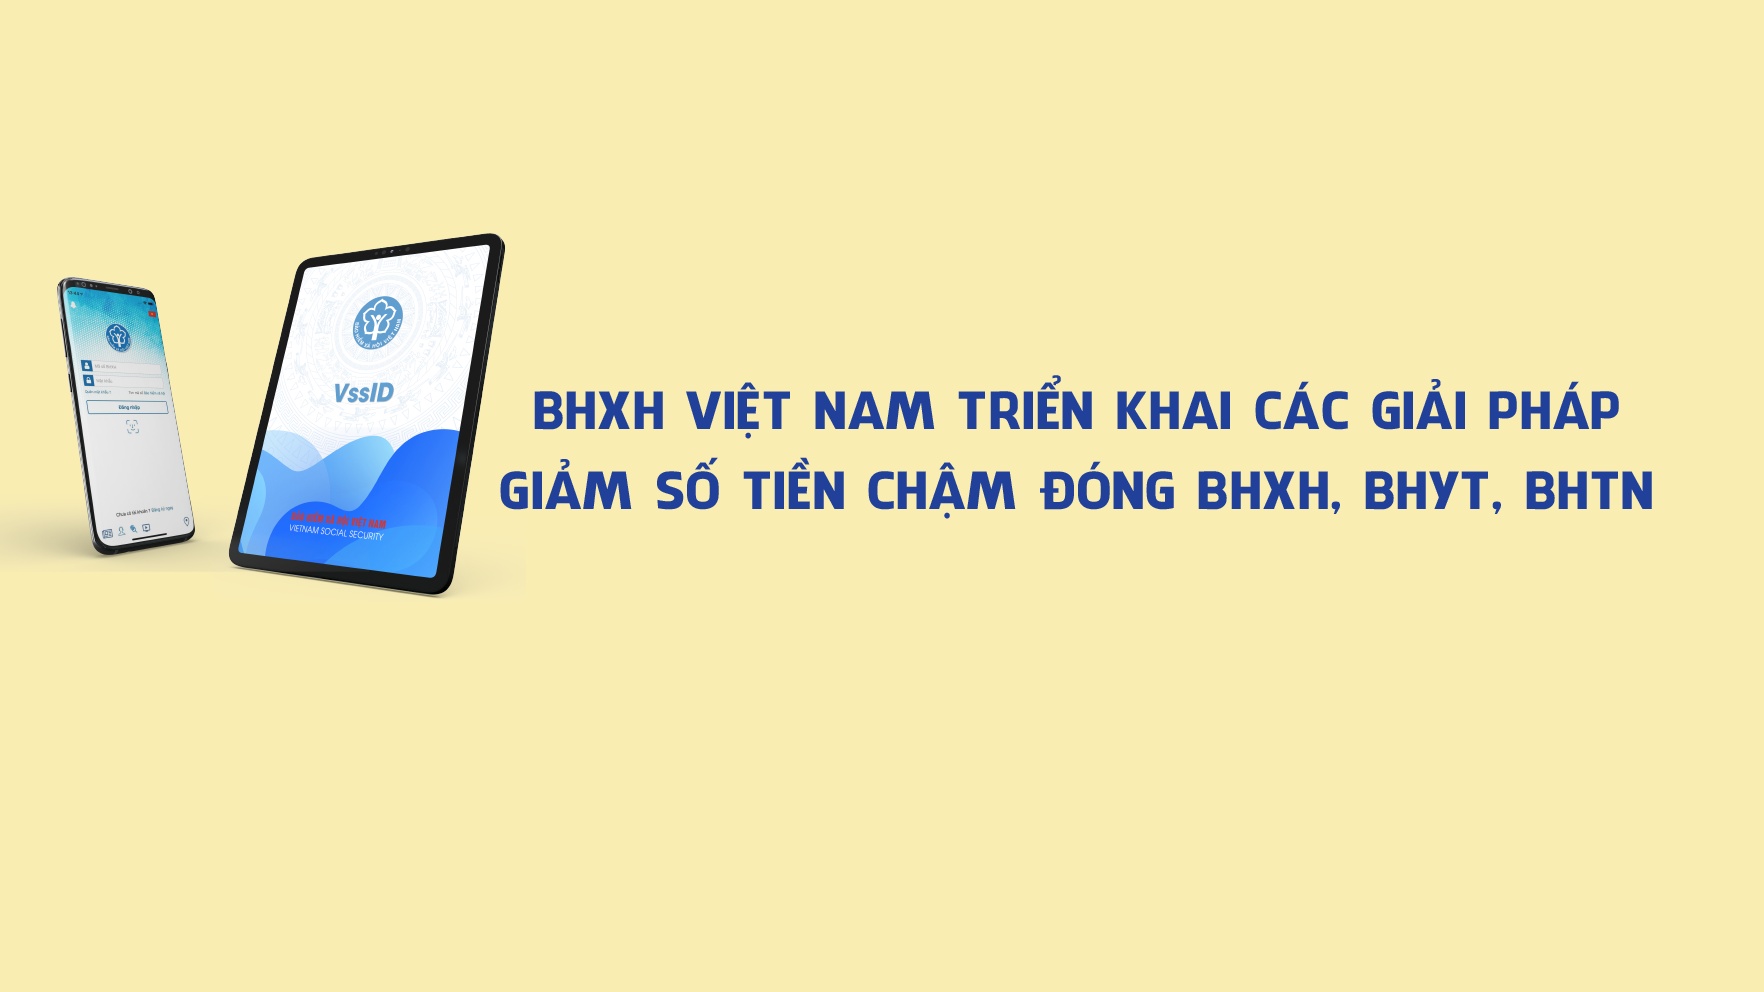 BHXH Việt Nam triển khai các giải pháp giảm số tiền chậm đóng BHXH